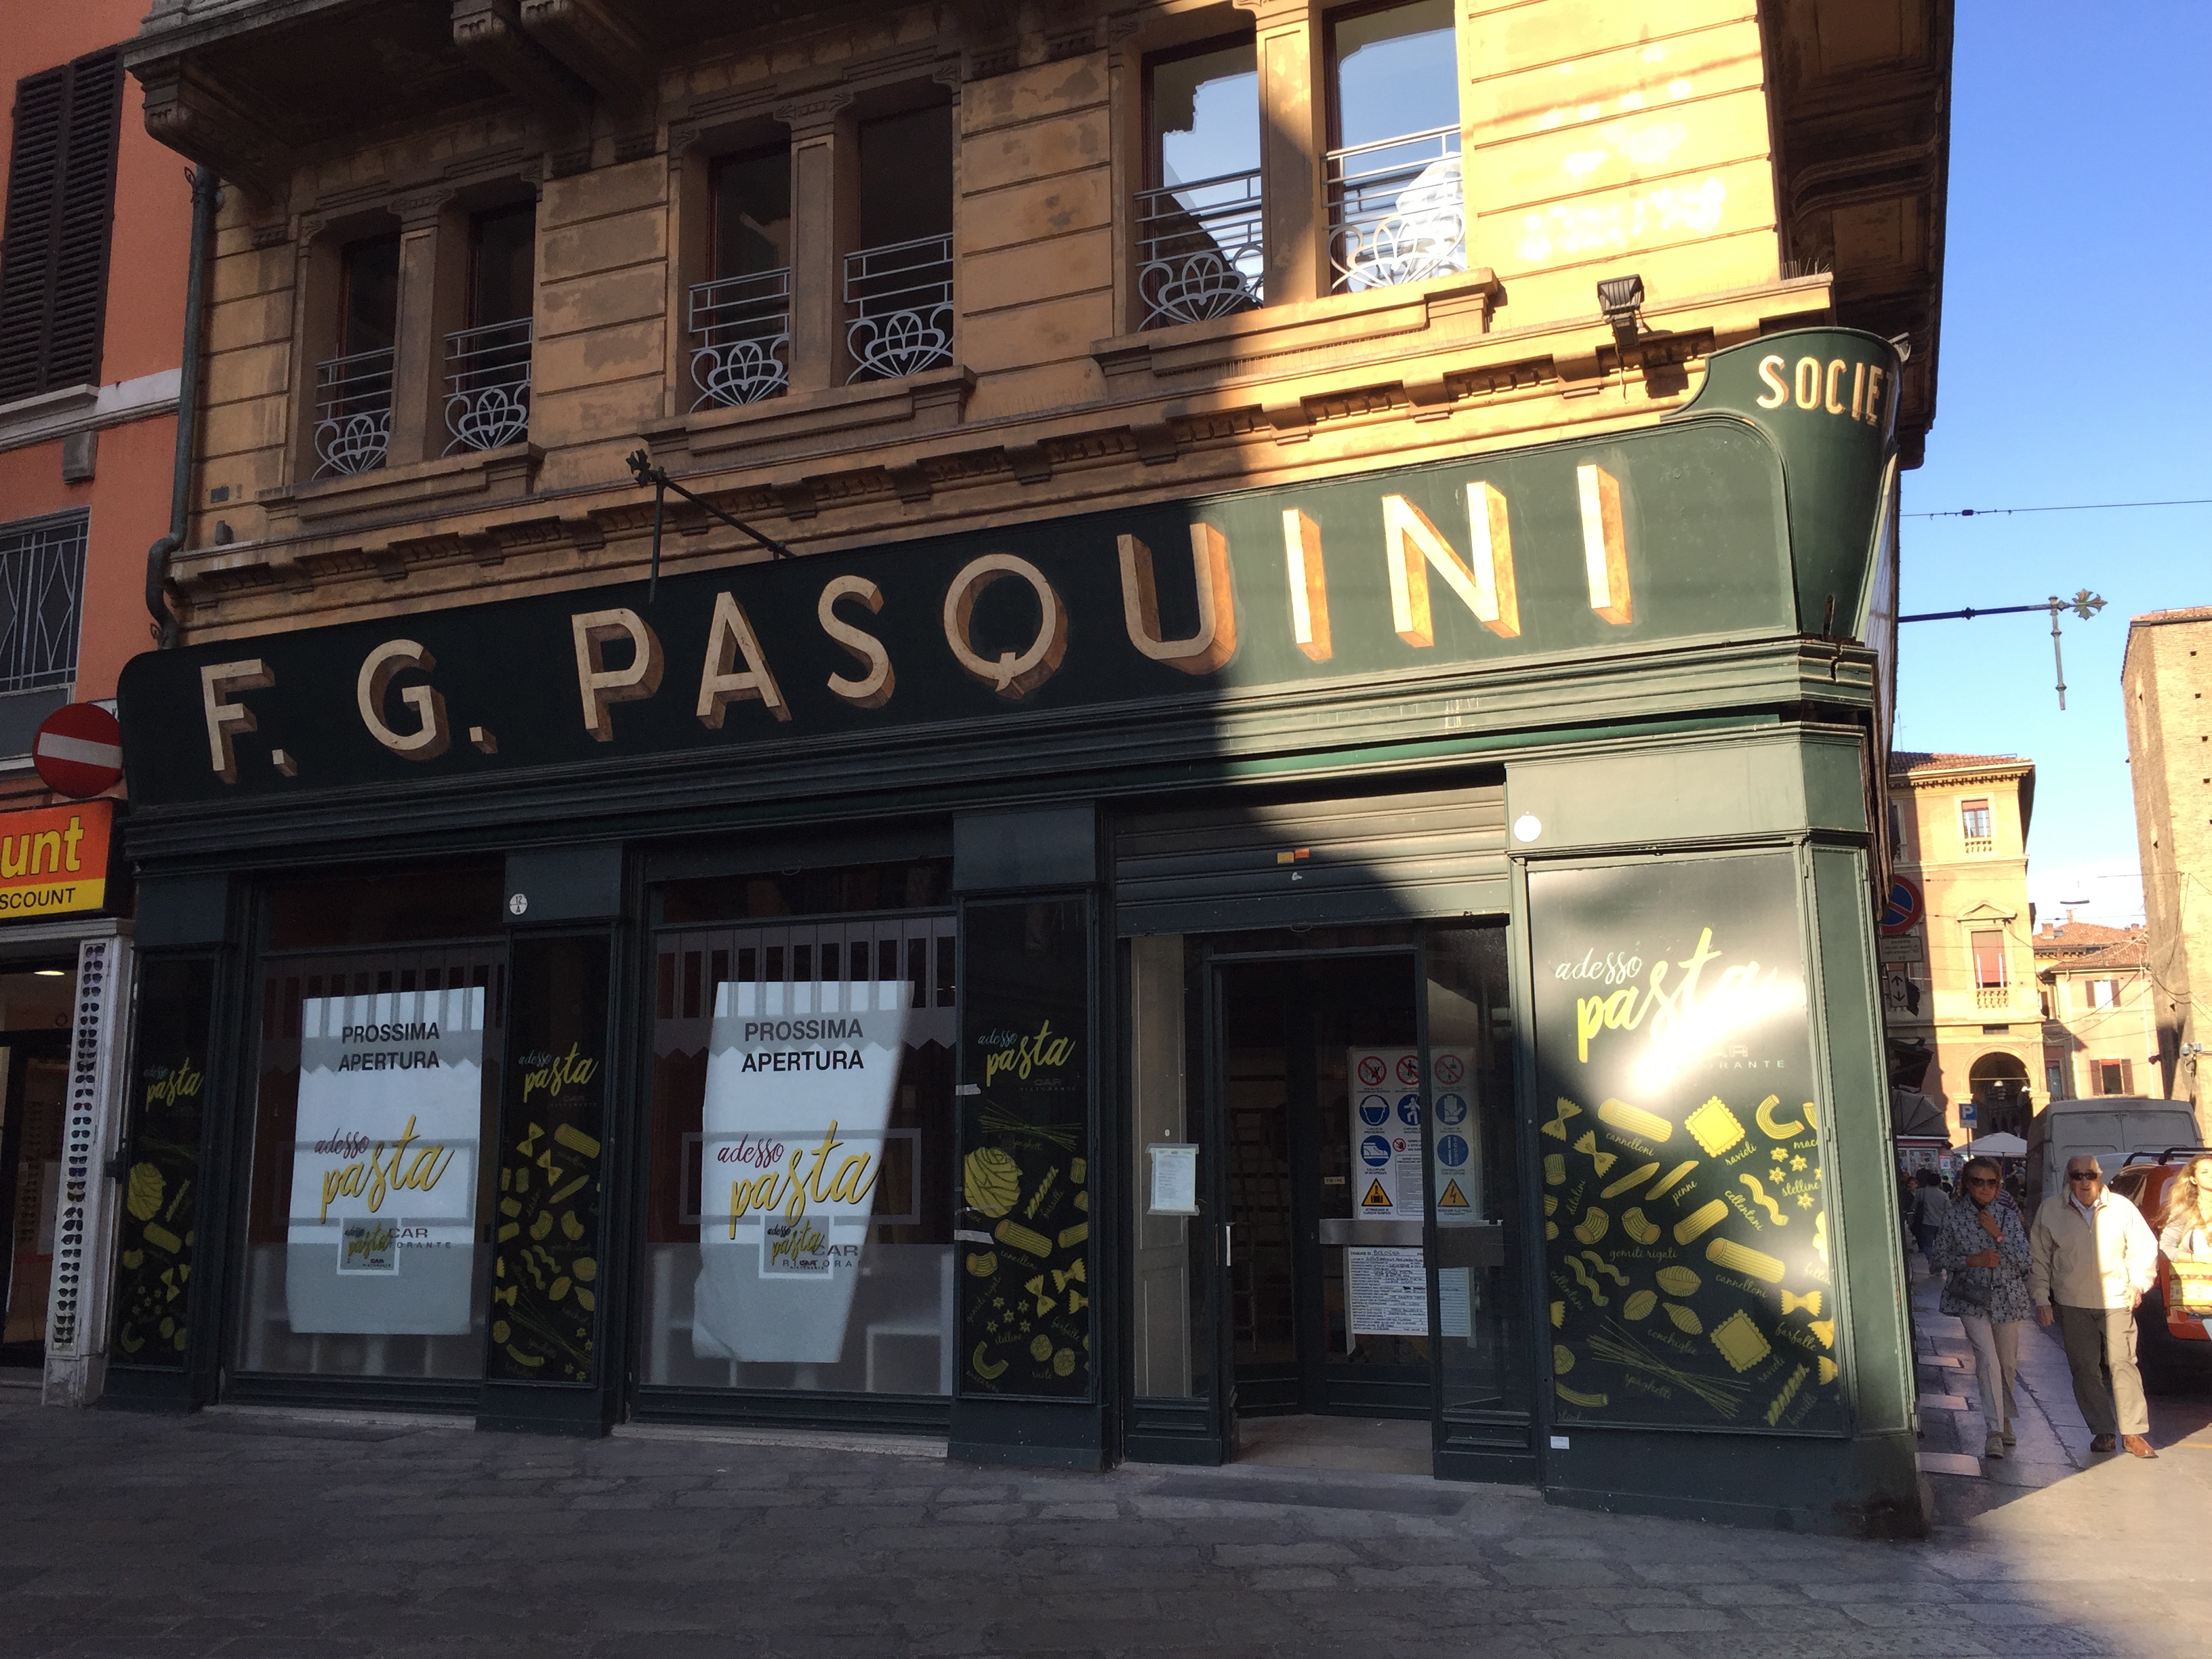 Nuovi locali, ristoranti e bar nella godereccia Bologna | BOLOGNA DA